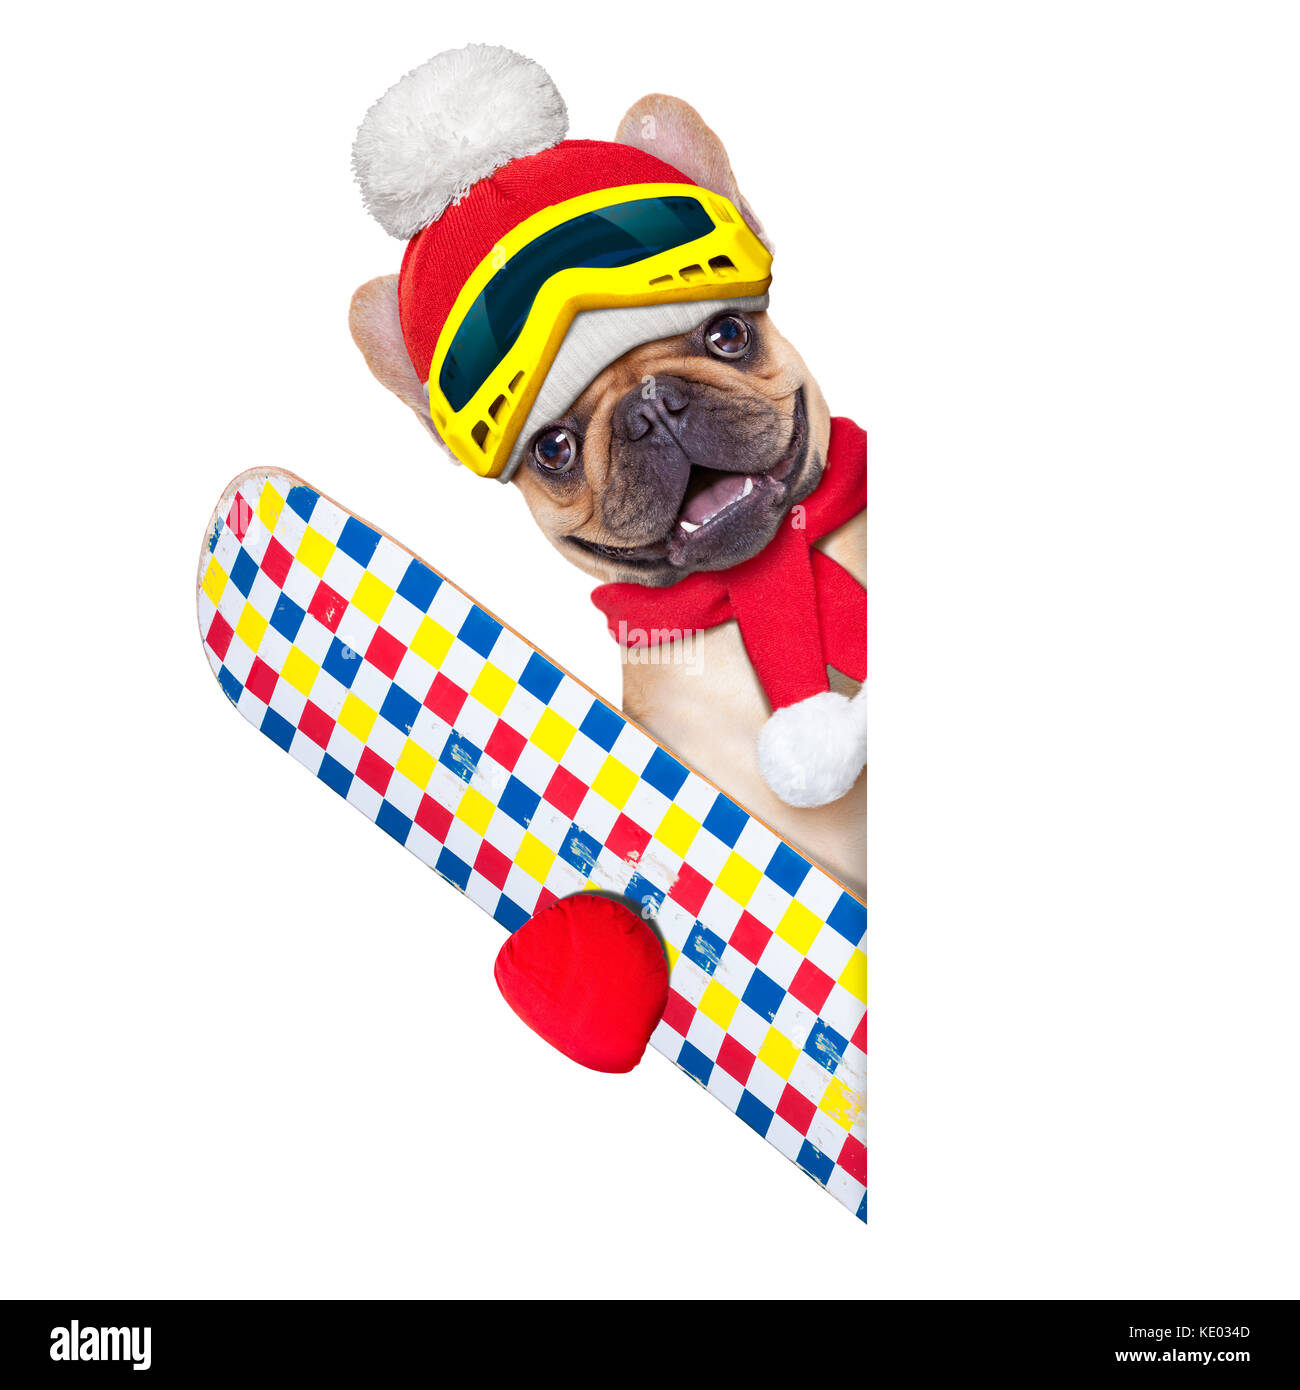 Chien bouledogue français fauve avec équipement de ski, portant ces lunettes , gants , un chapeau et une écharpe rouge,blanc vide à côté d'un bandeau ou d'un placard, isolated on white Banque D'Images